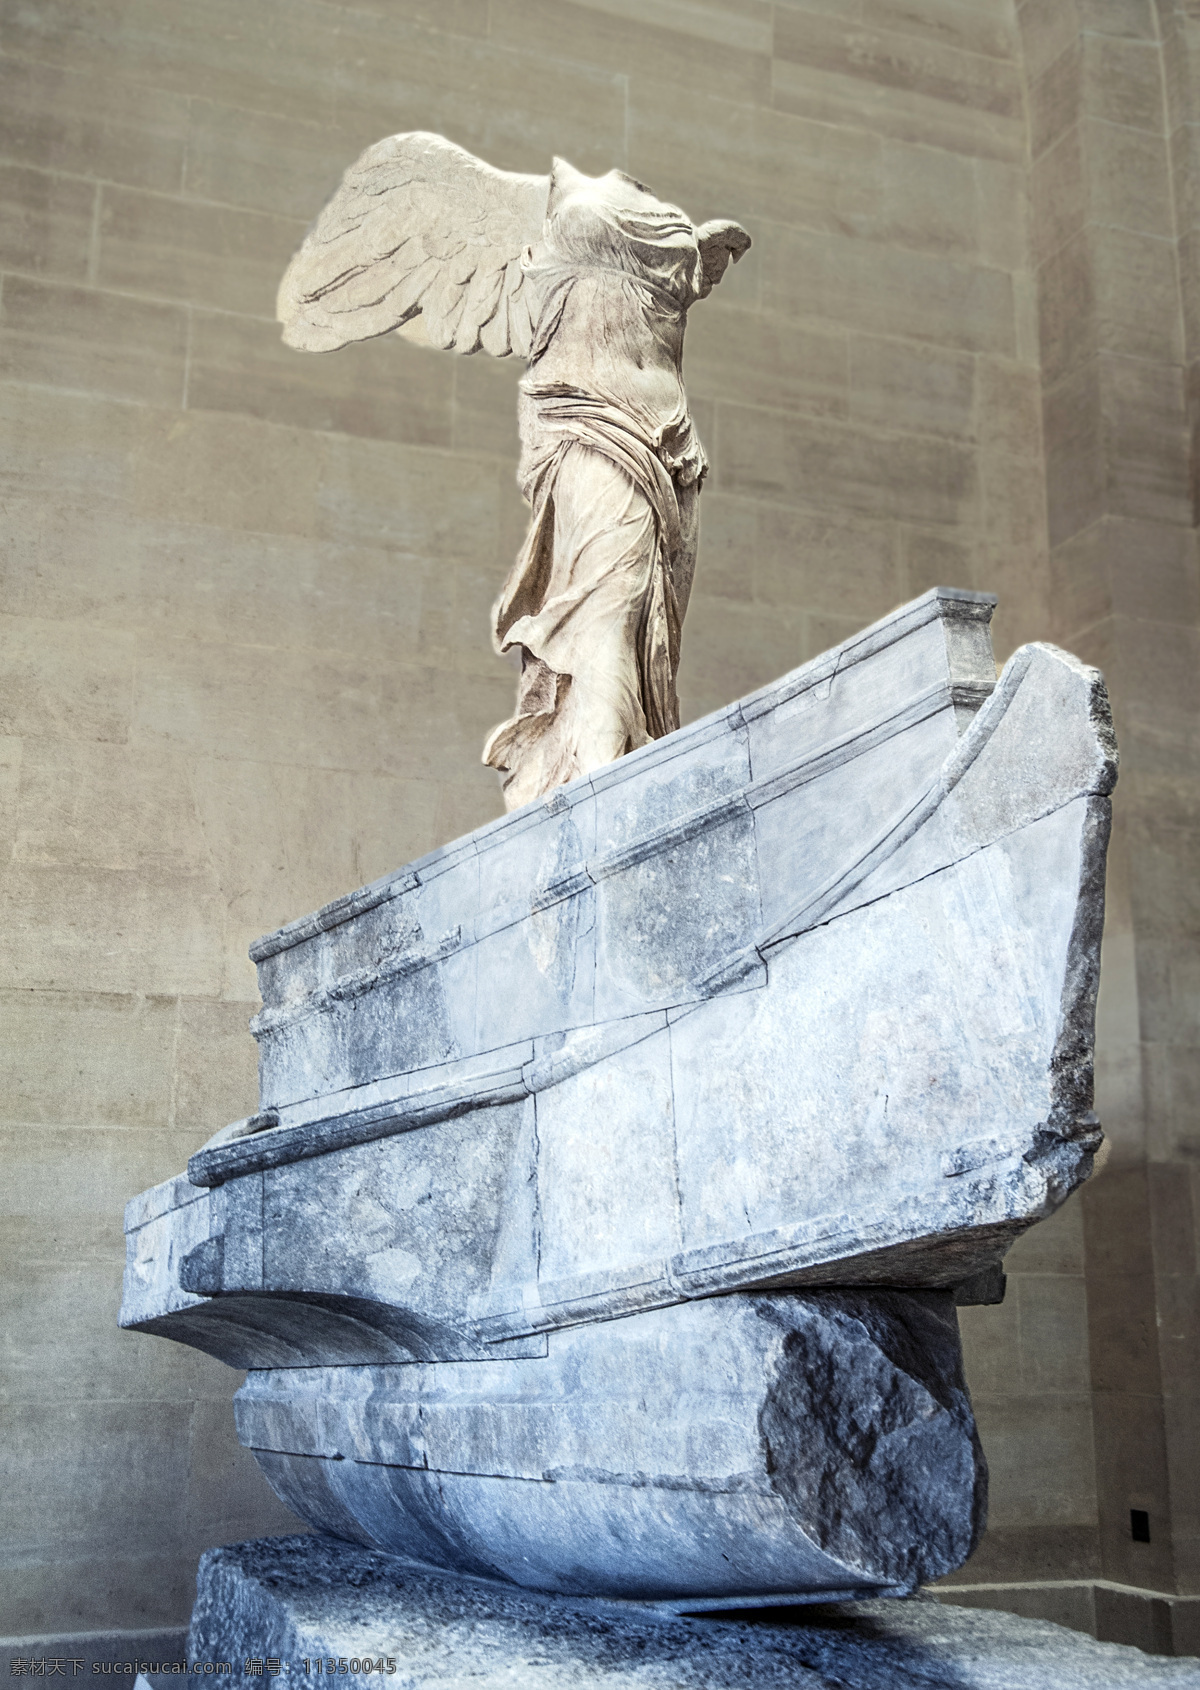 法国 巴黎 罗孚宫藏品 萨莫色雷斯 胜利女神 古希腊 公元前 190年 罗浮宮专辑 旅游摄影 国外旅游